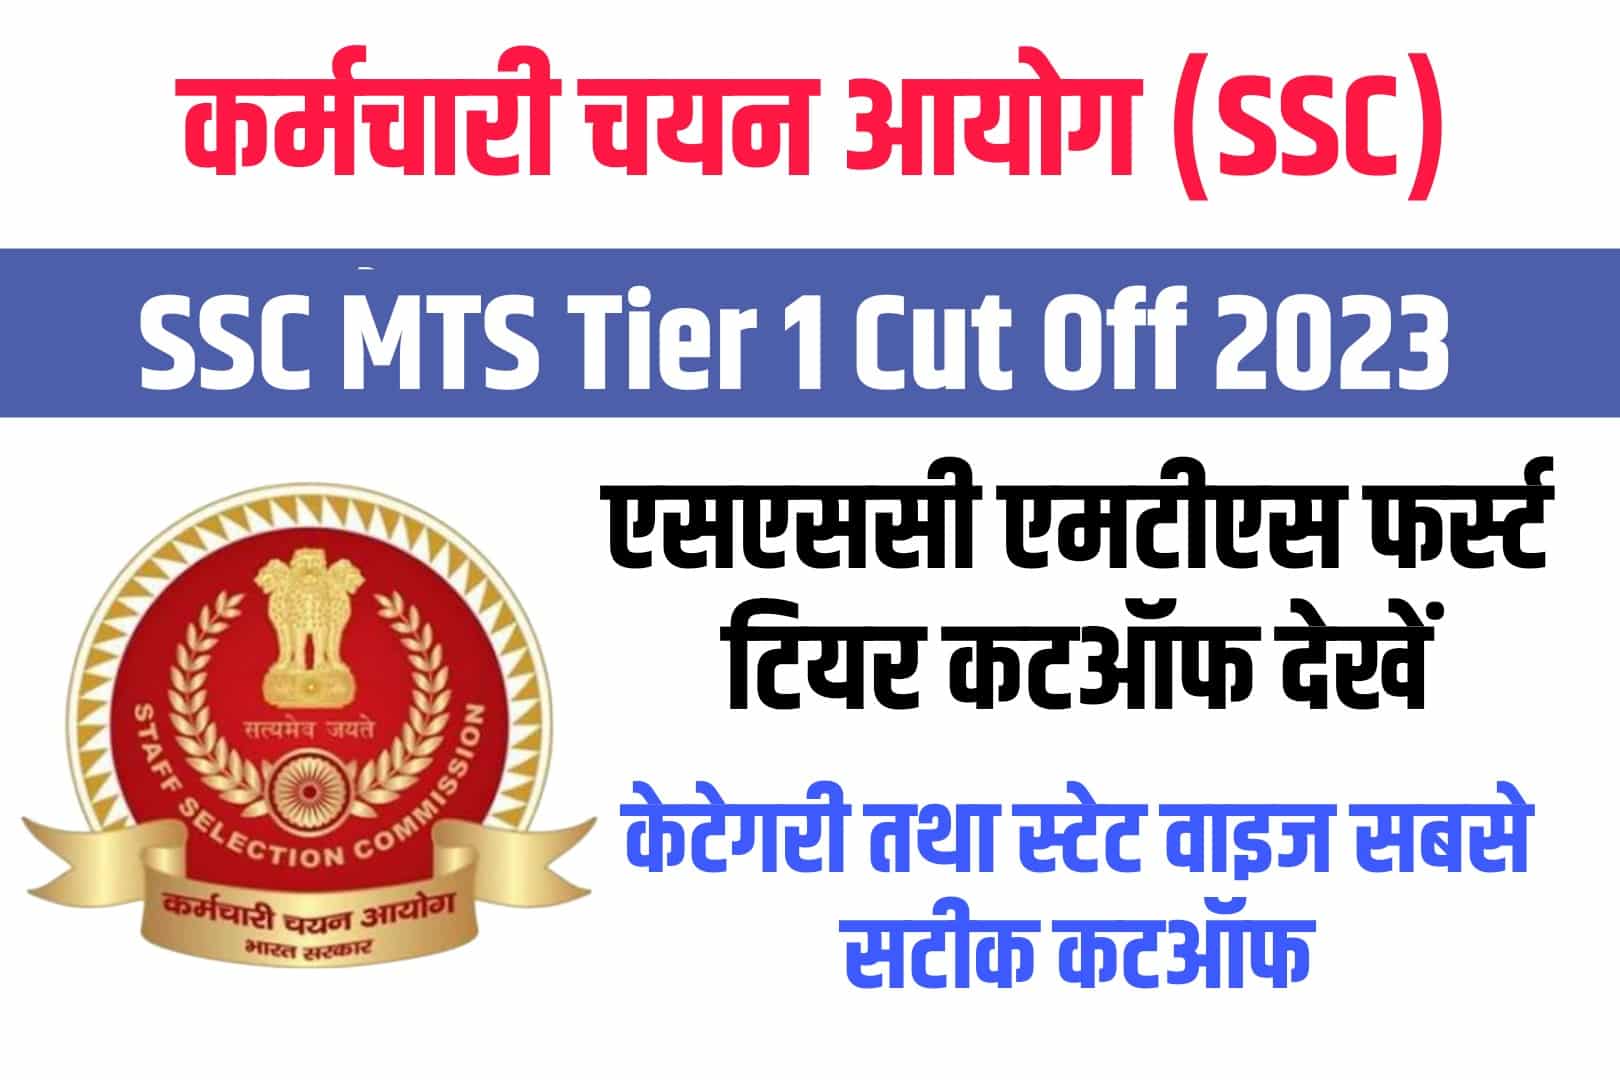 SSC MTS Tier 1 Cut Off 2023